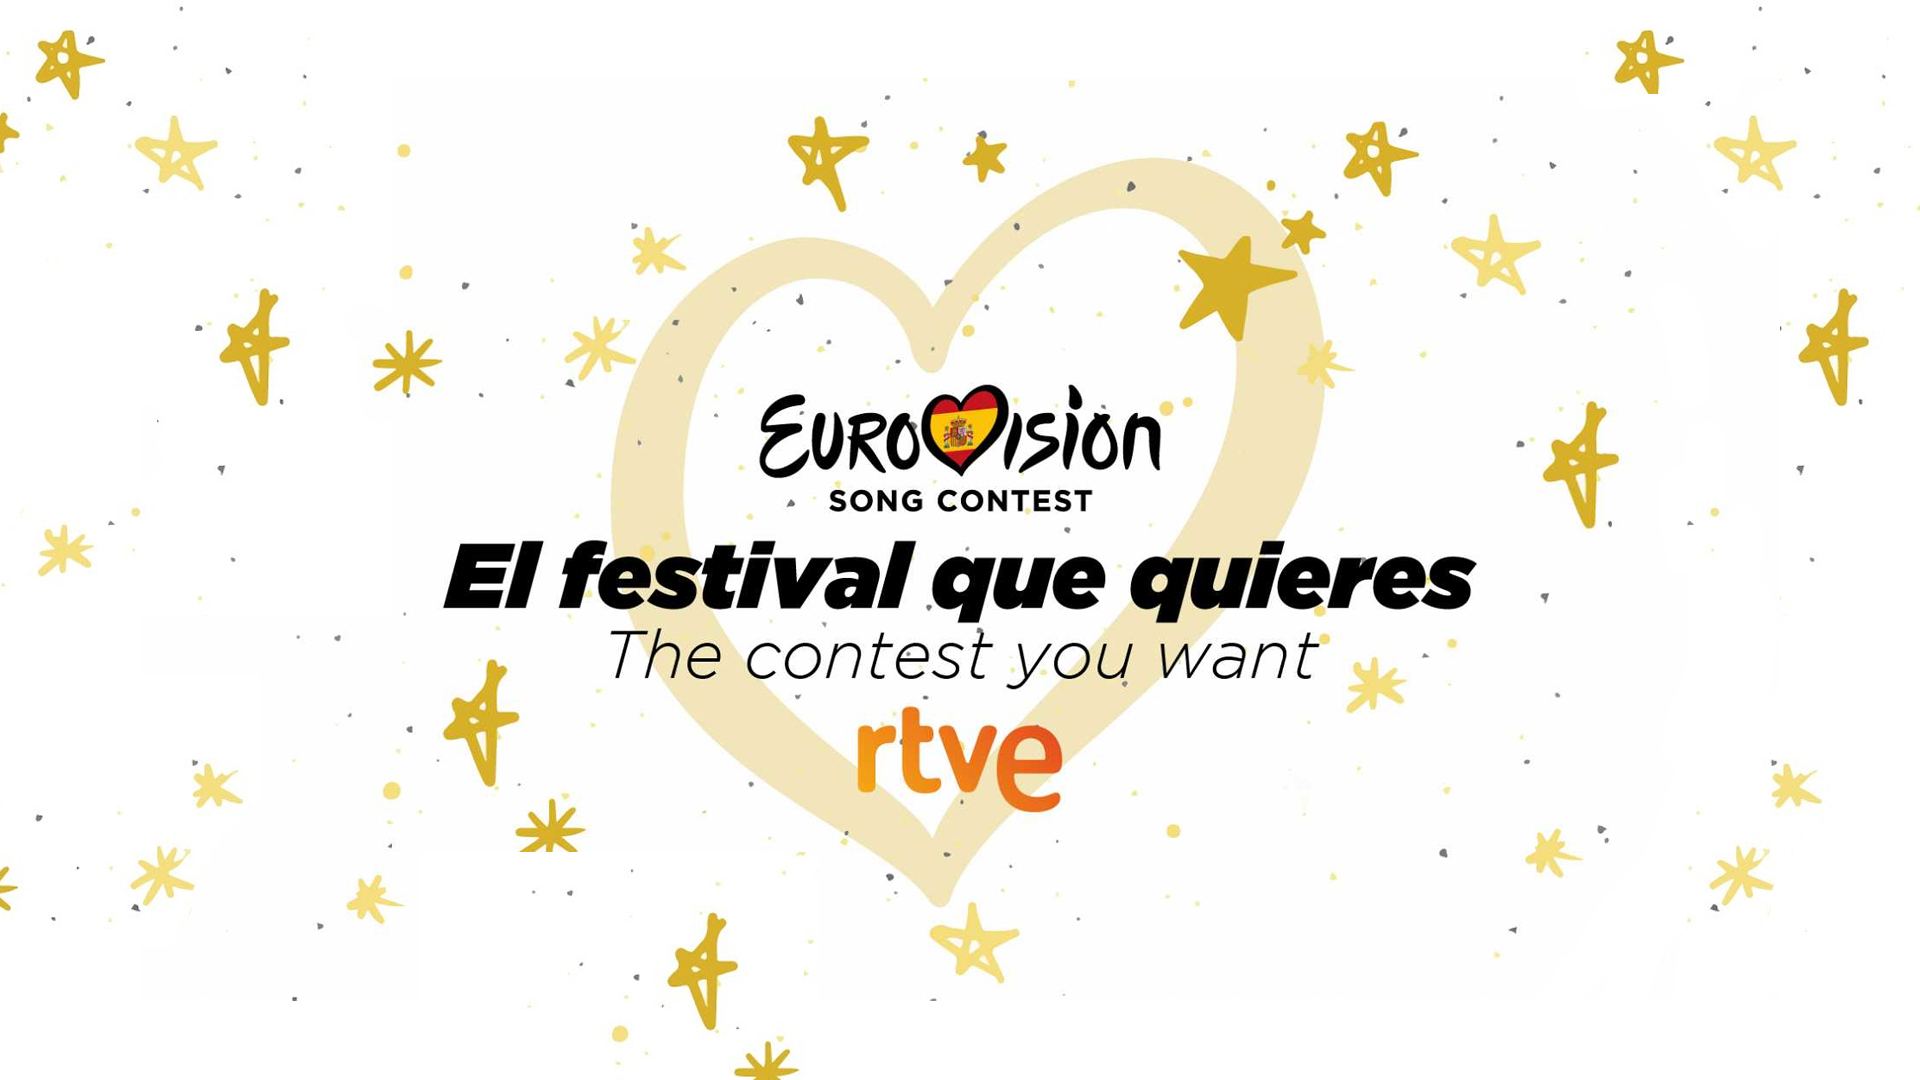 RTVE organizará el coloquio "Eurovisión, el festival que quieres", el próximo viernes, 5 de noviembre